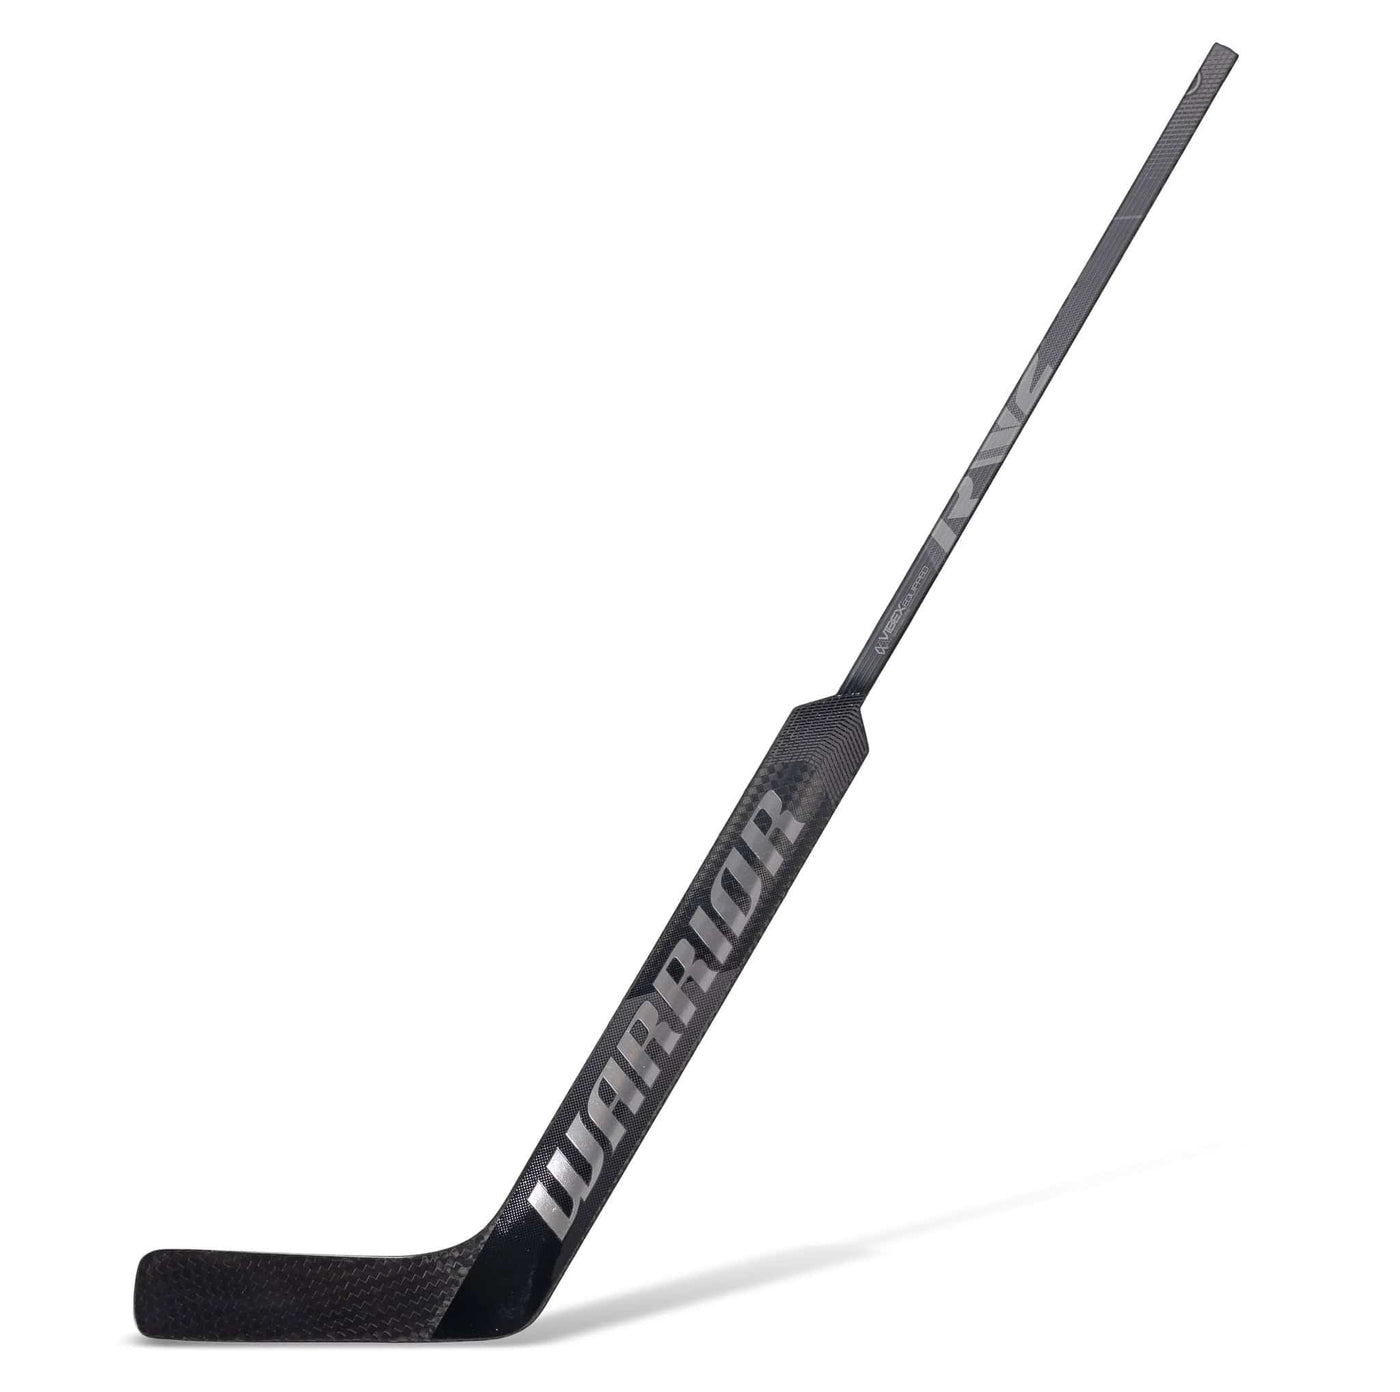 Warrior Ritual V2 Pro Senior Goalie Stick - TheHockeyShop.com